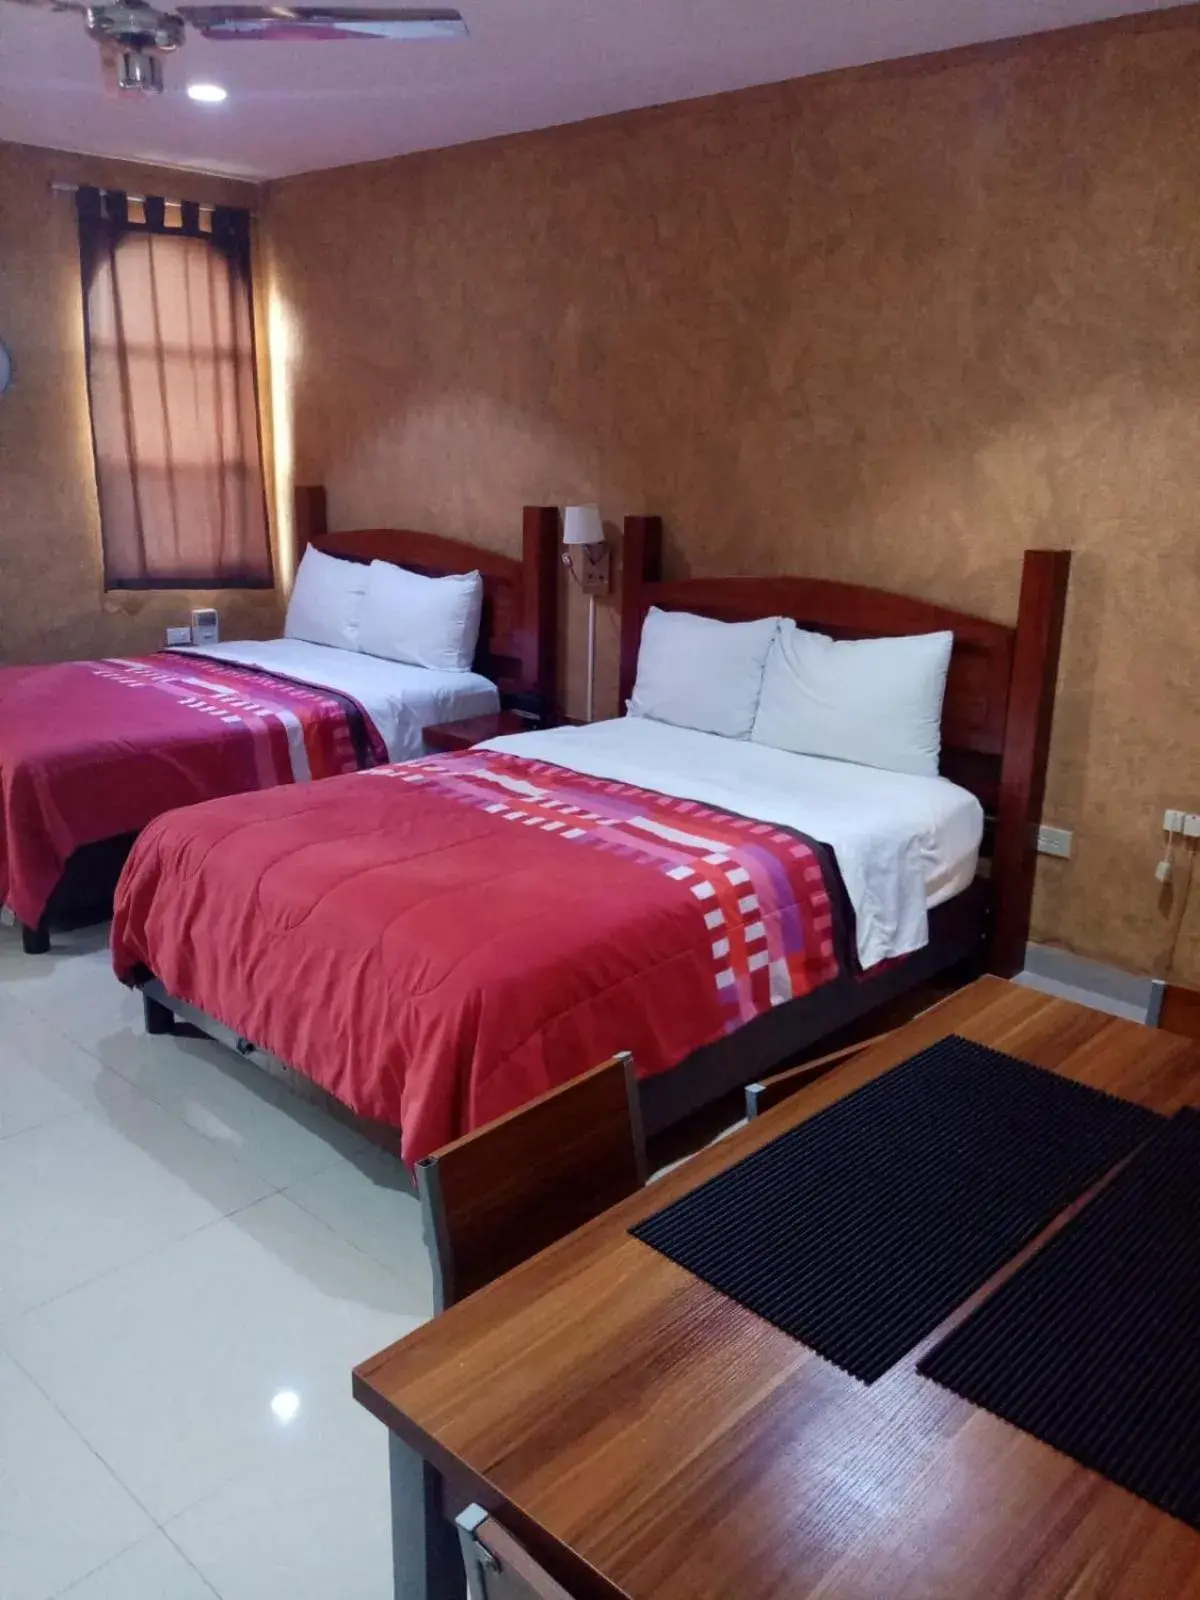 Bedroom in Hotel La Casona Real